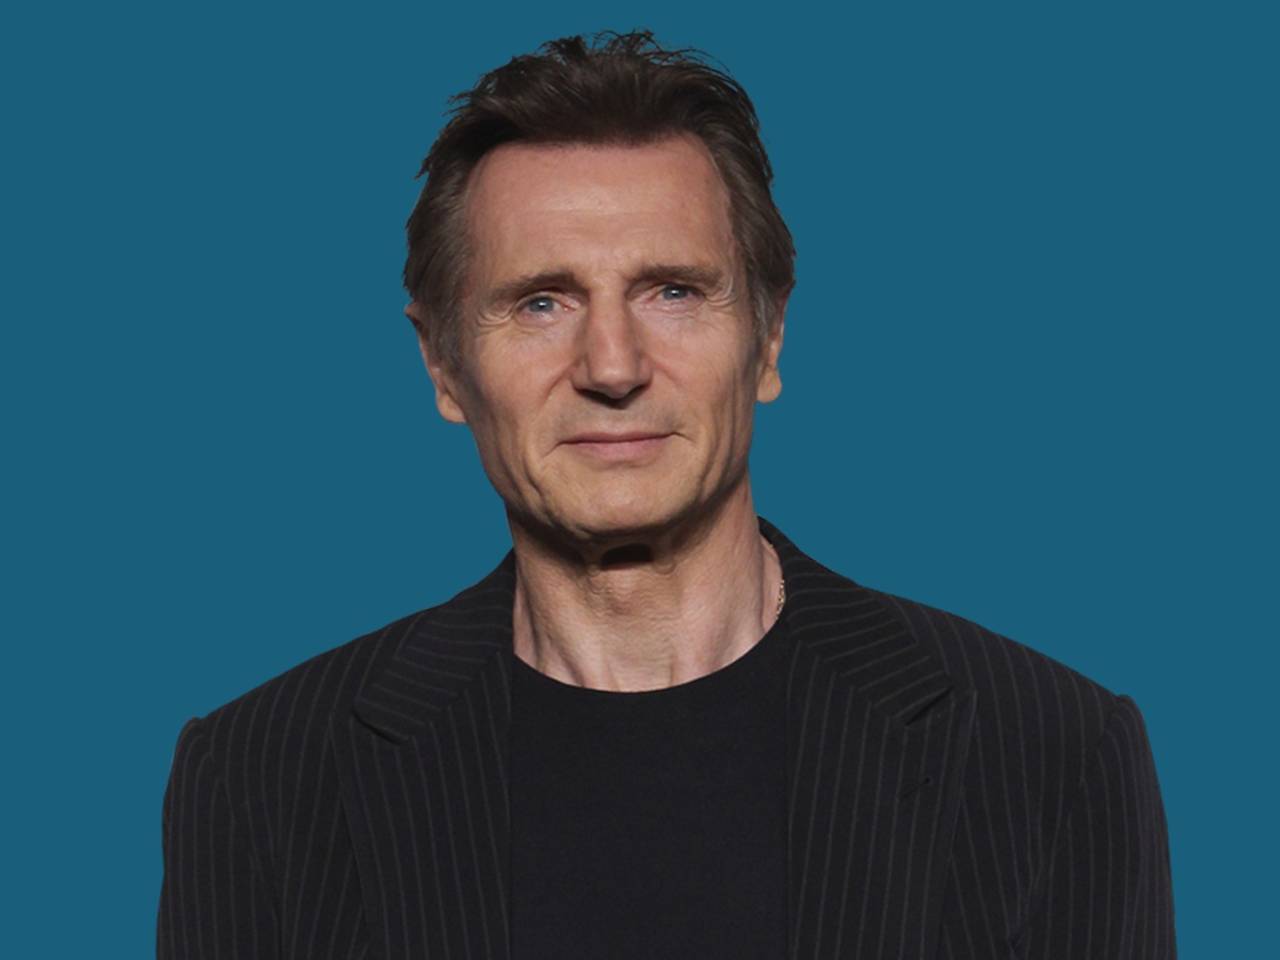 Polémica. El actor Liam Neeson justificó algunas acusaciones de acoso sexual, quien asegura que son cosas infantiles.